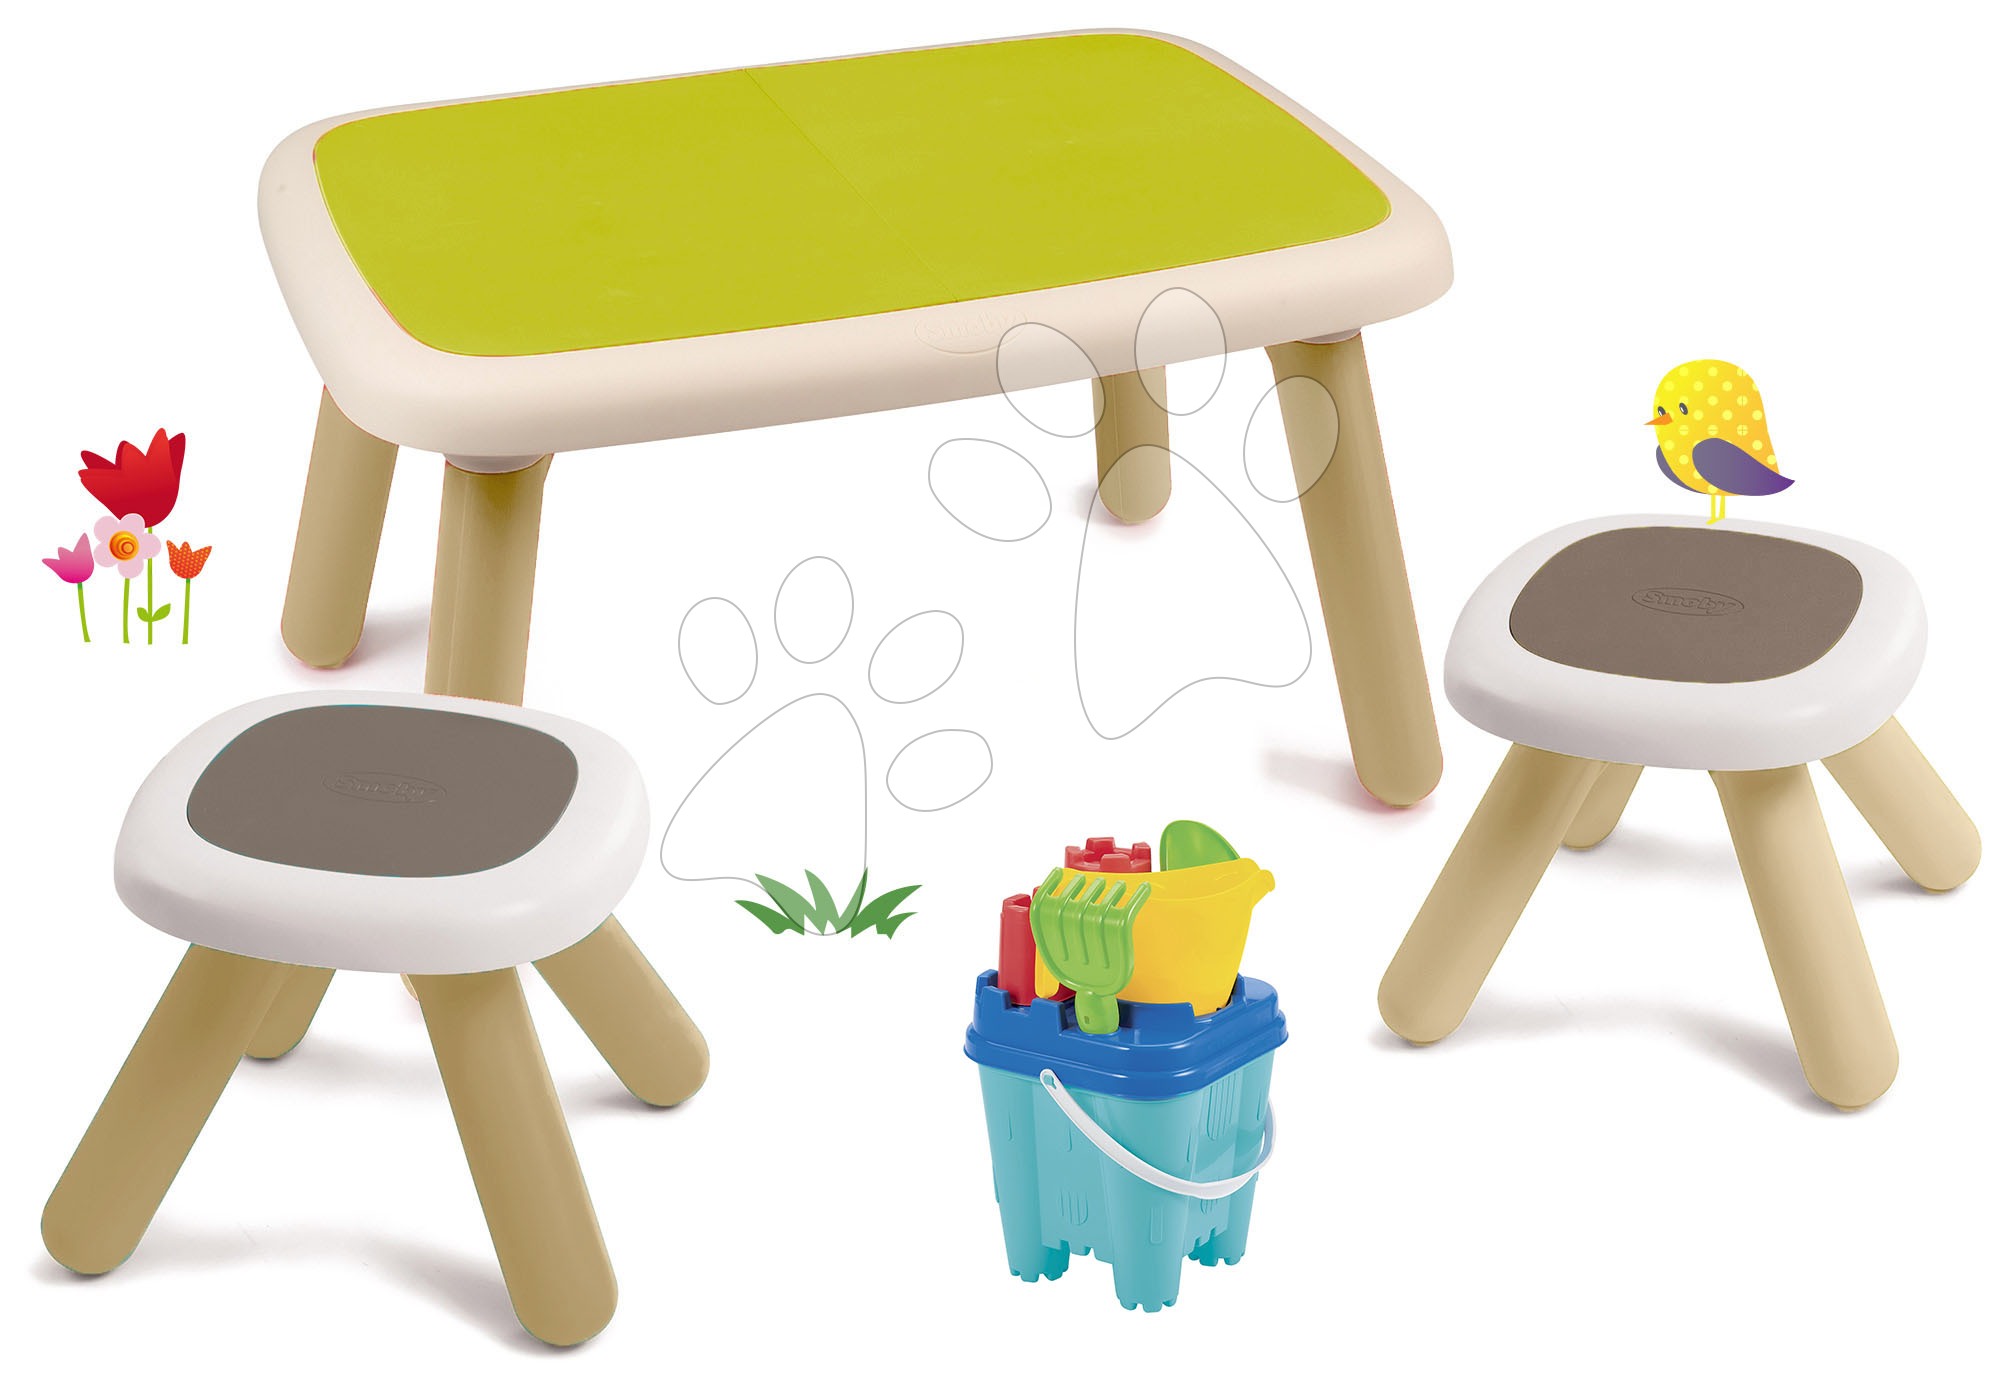 Set stůl pro děti KidTable zelený Smoby se dvěma stolky s UV filtrem a kbelík setem